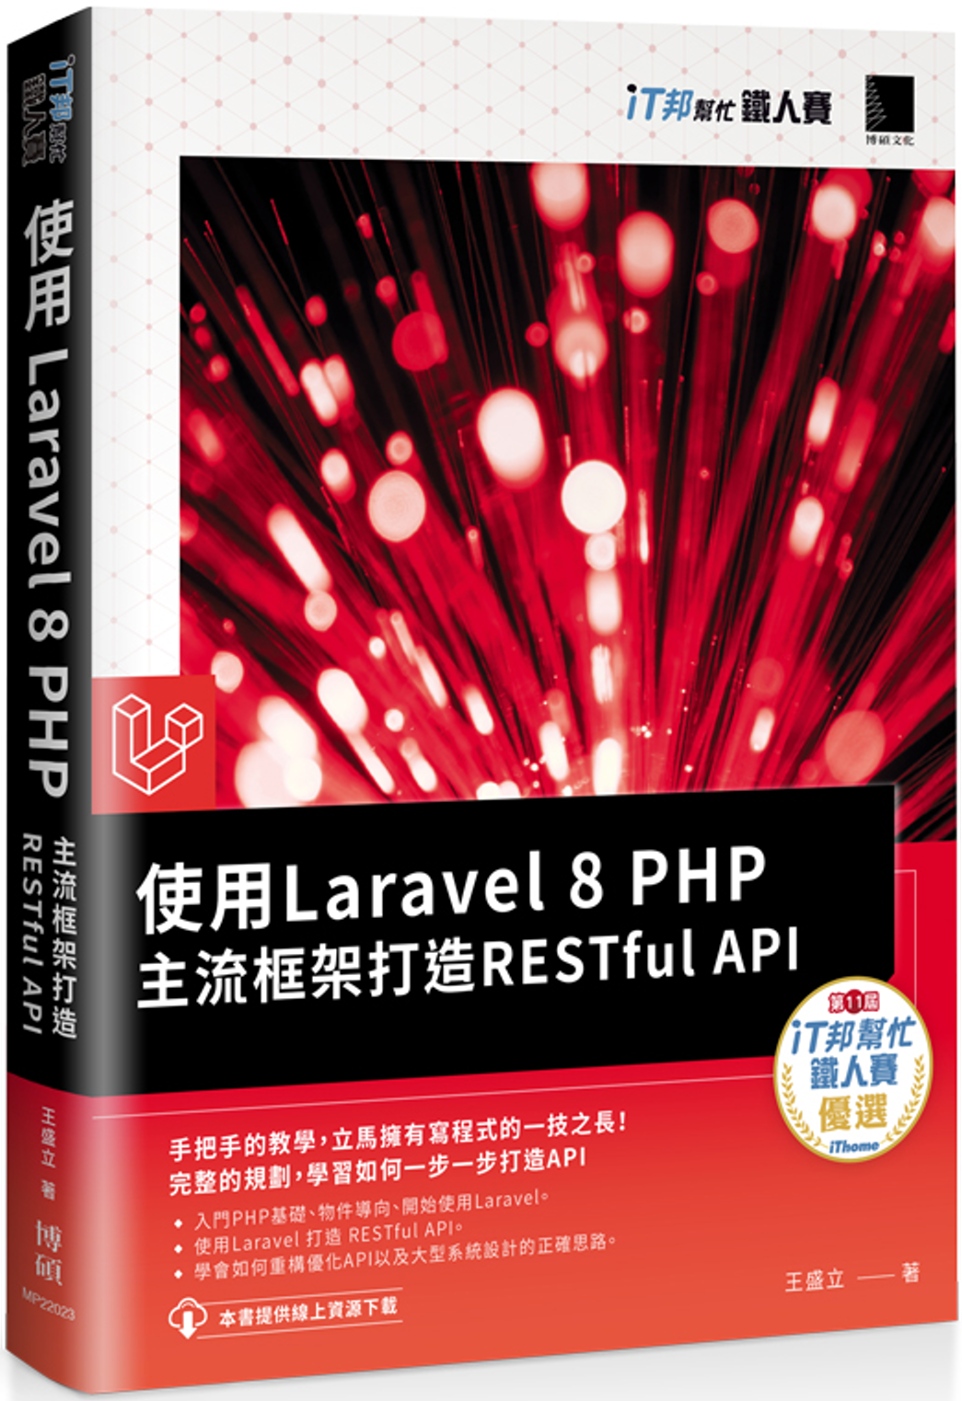 使用Laravel 8 PHP主流框架打造RESTful A...